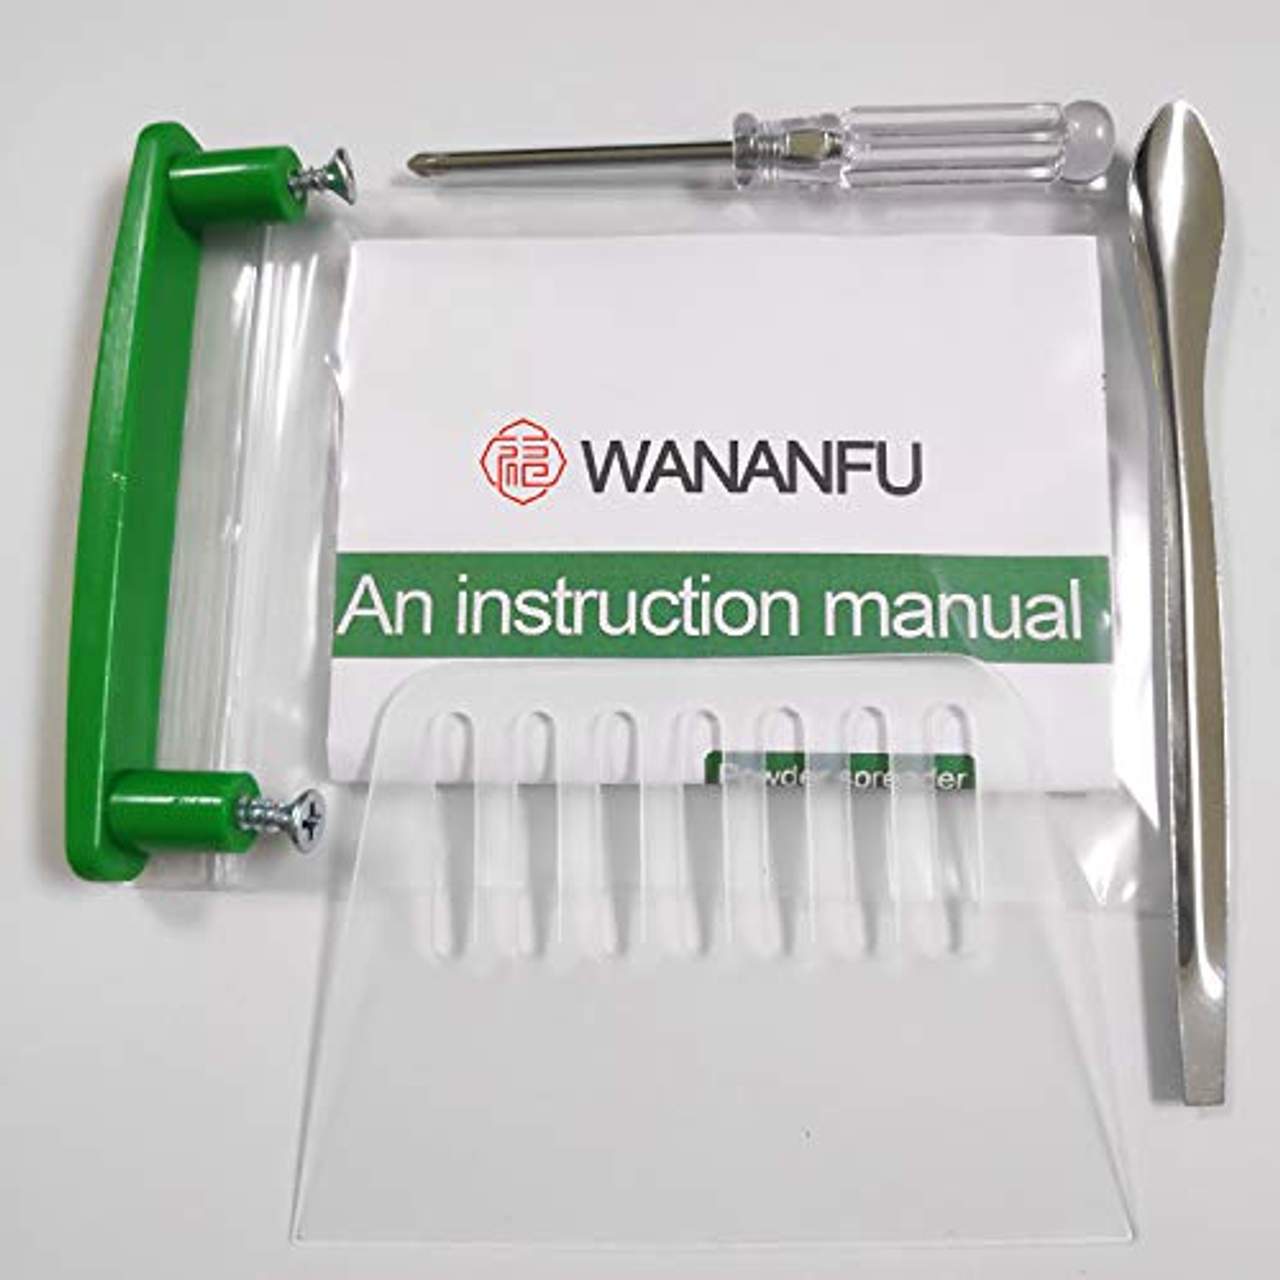 Wananfu Kapselfüller 00 mit detaillierter Anleitung